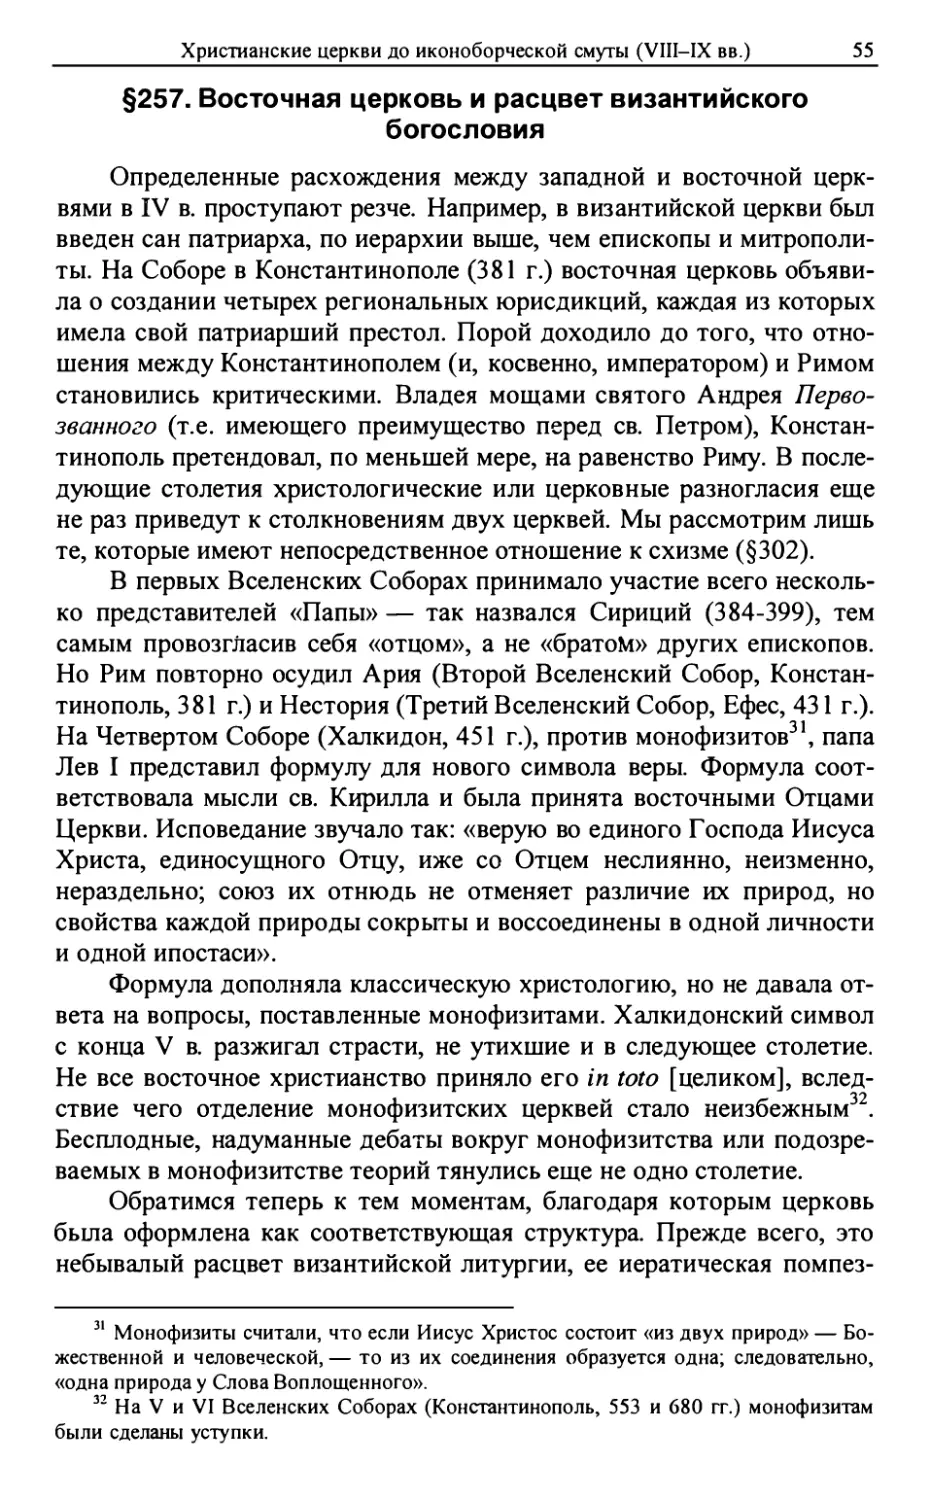 §257. Восточная церковь и расцвет византийского богословия